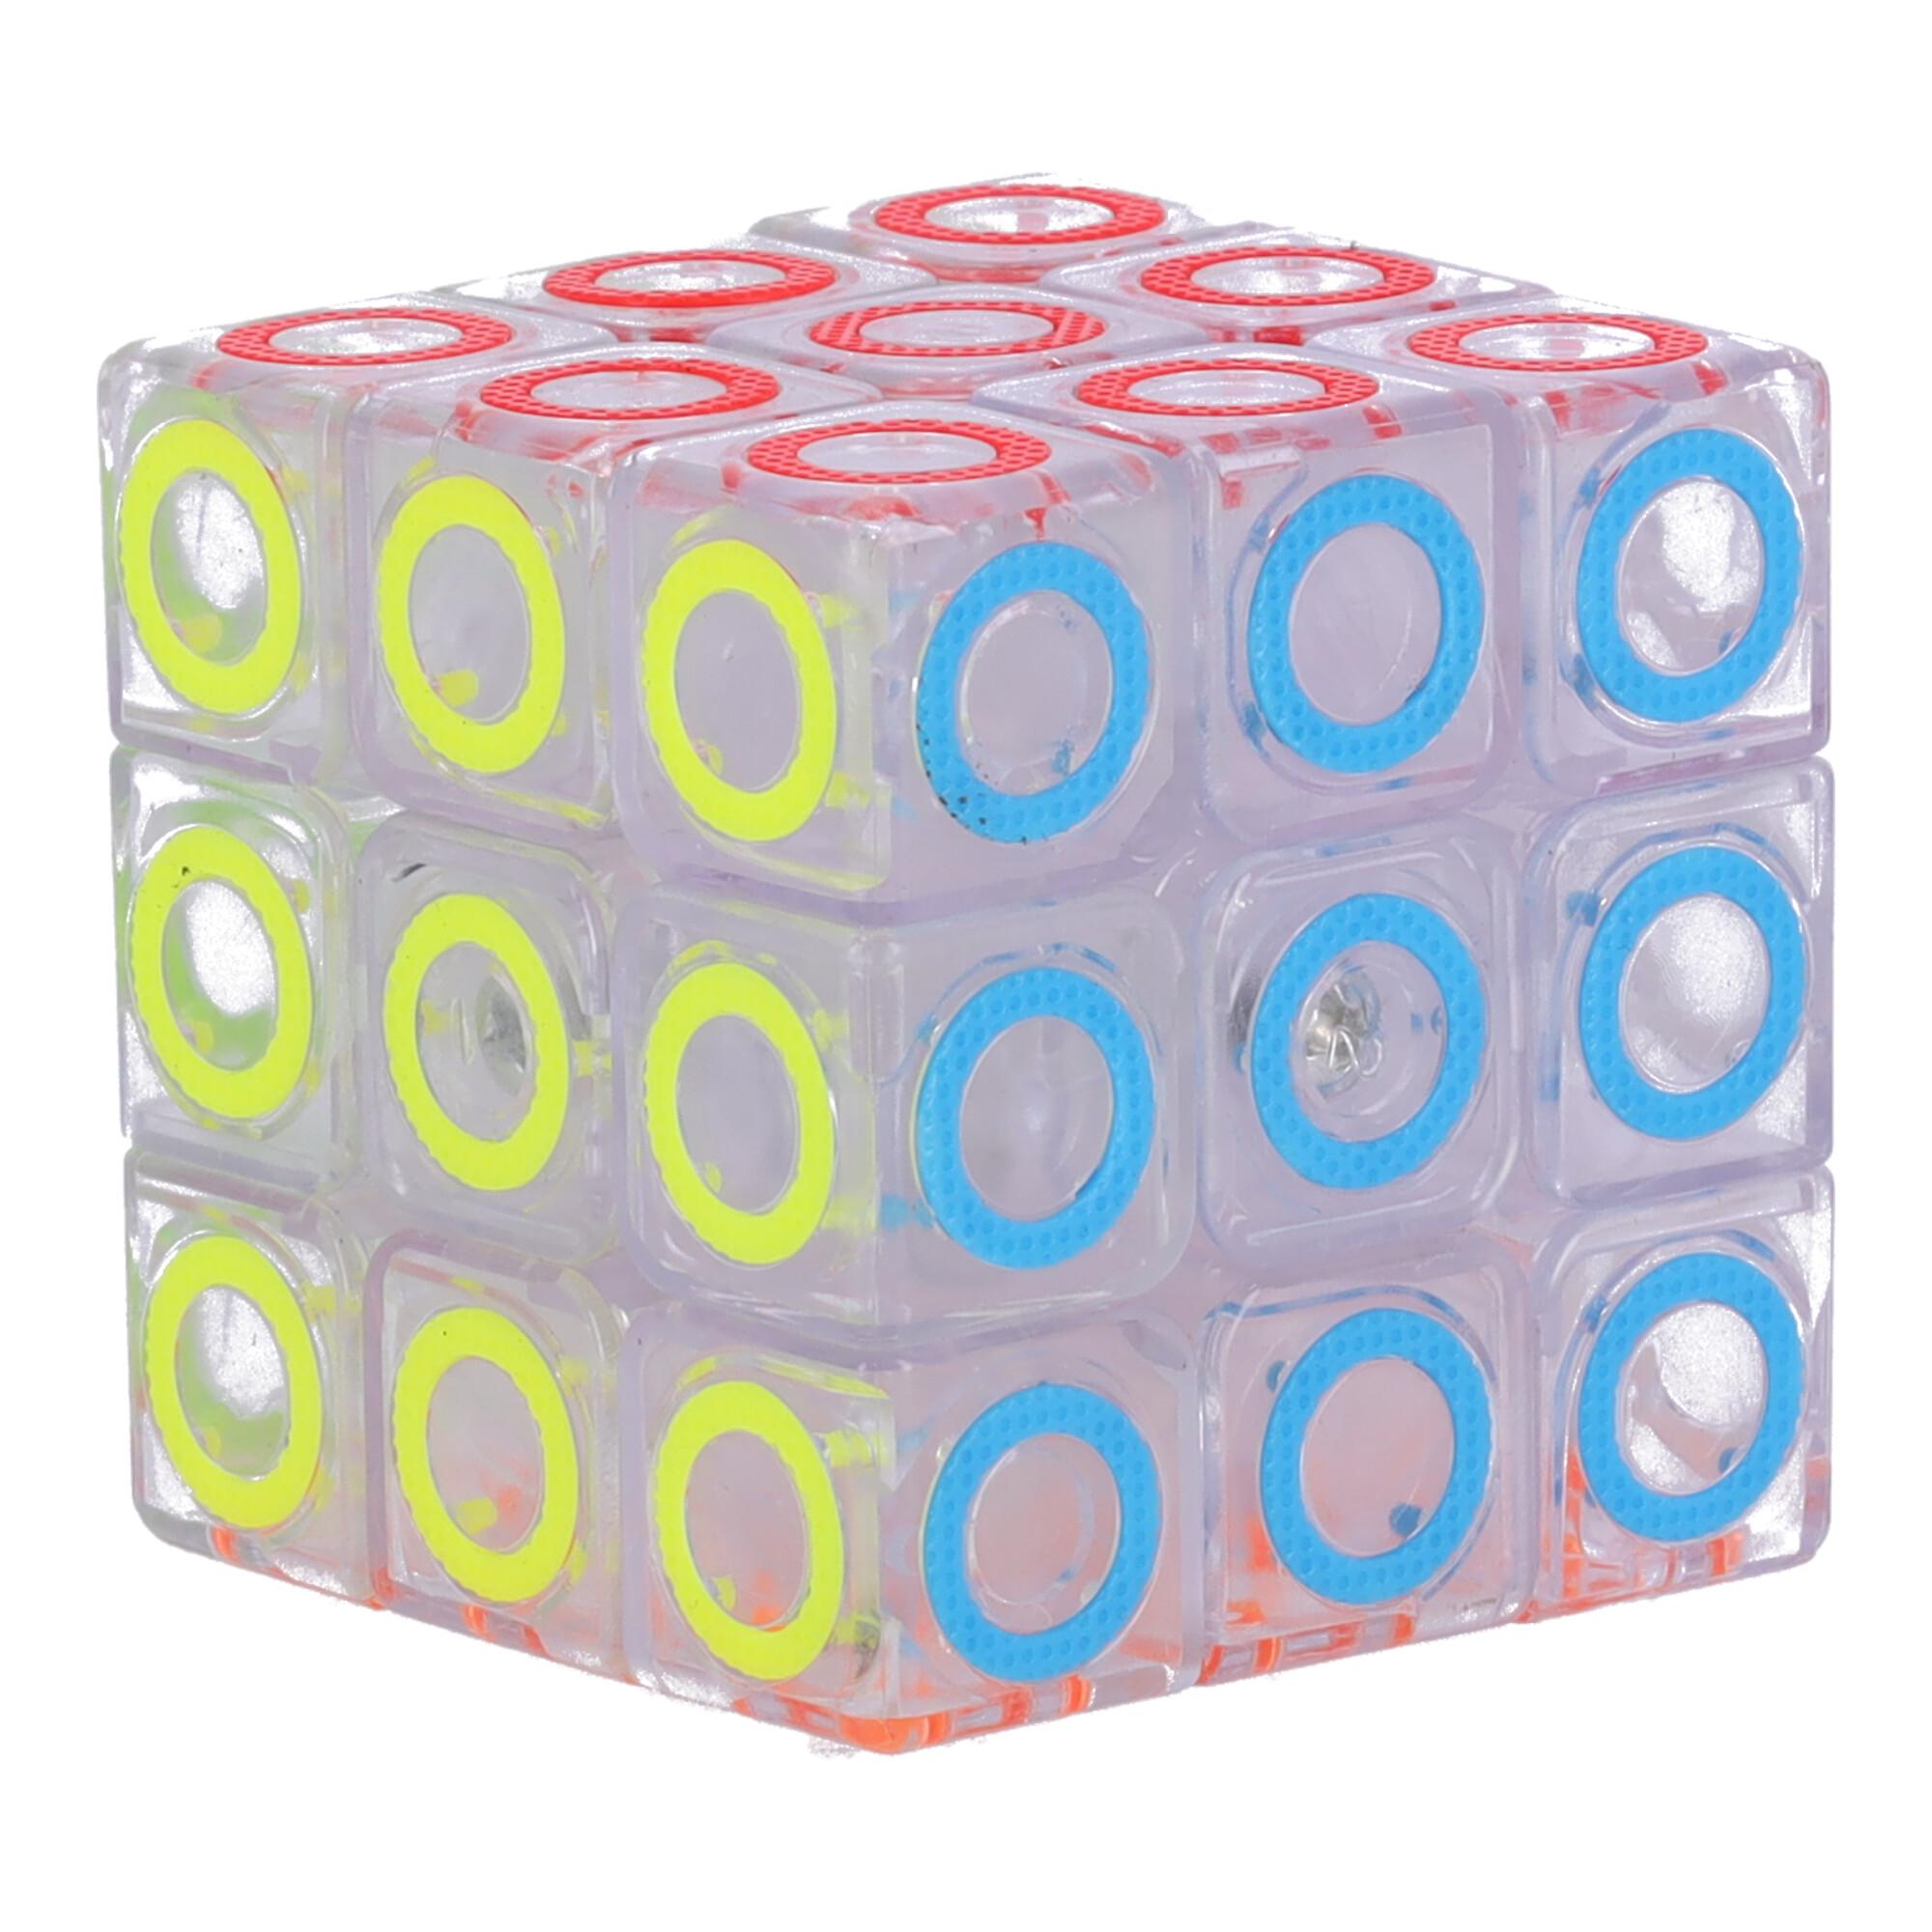 Nowoczesna układanka, kostka logiczna, Kostka Rubika - typ IV